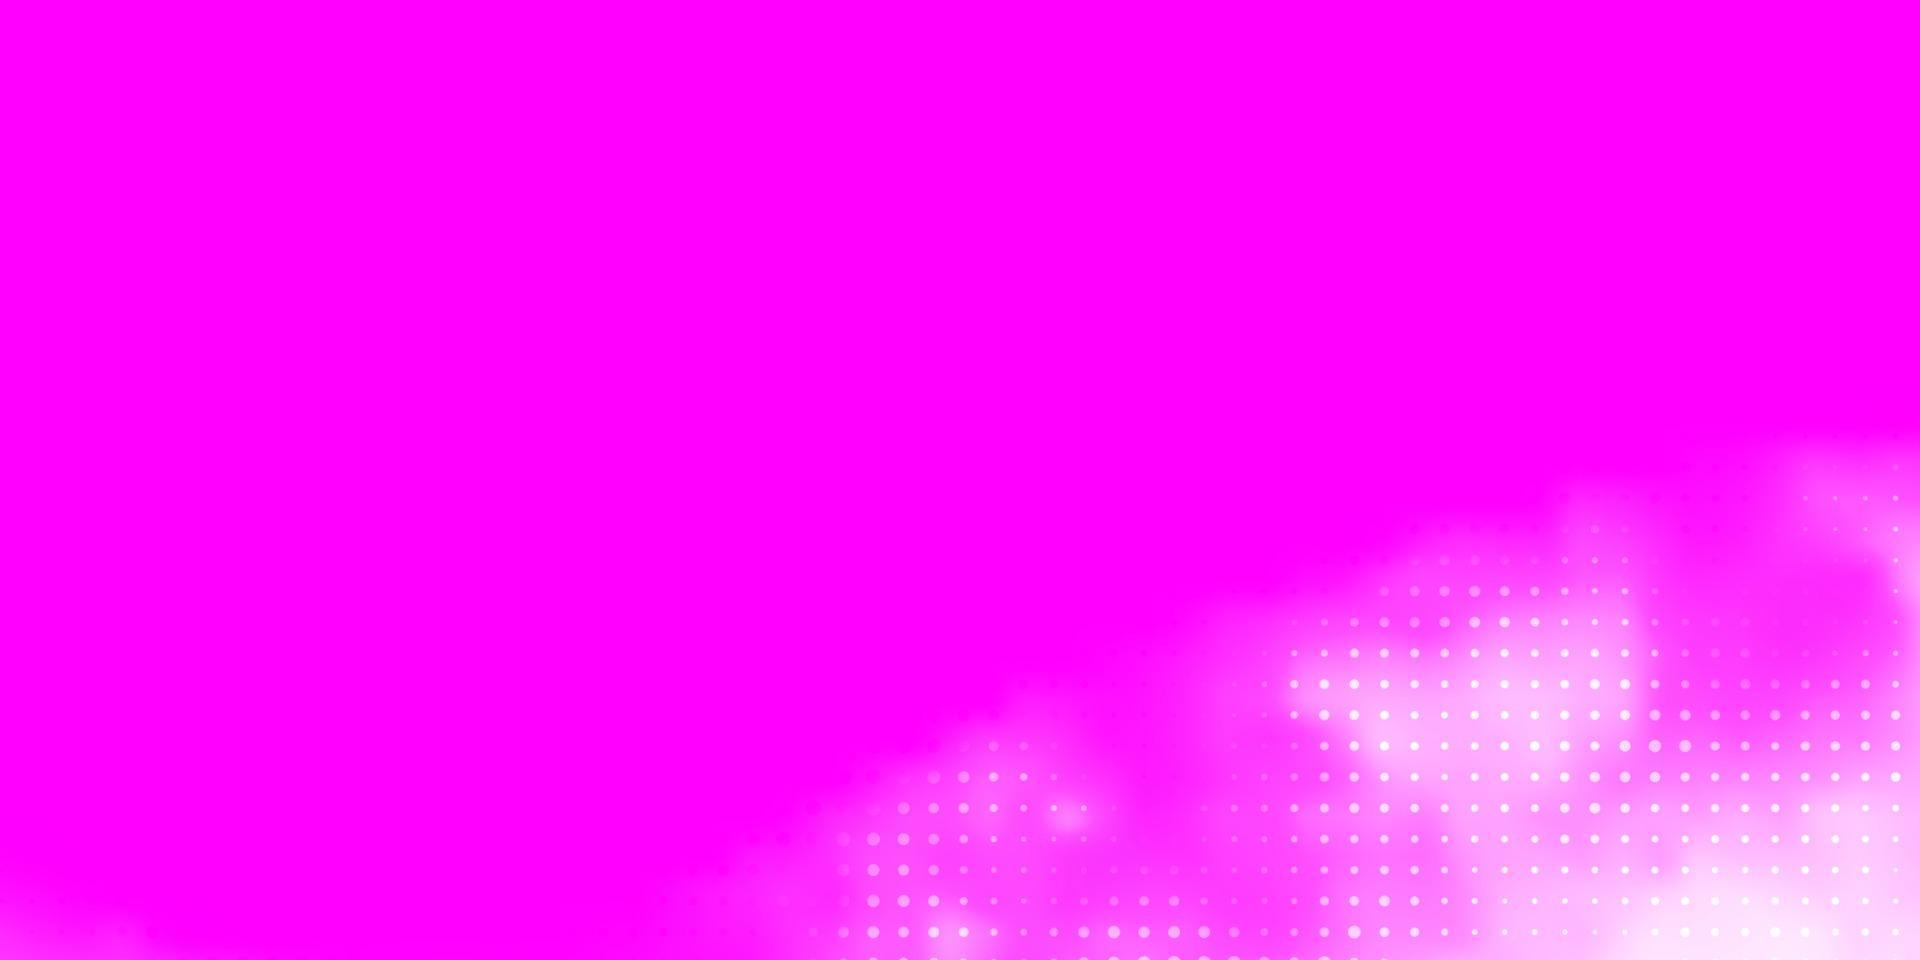 ljuslila, rosa vektormall med cirklar. vektor